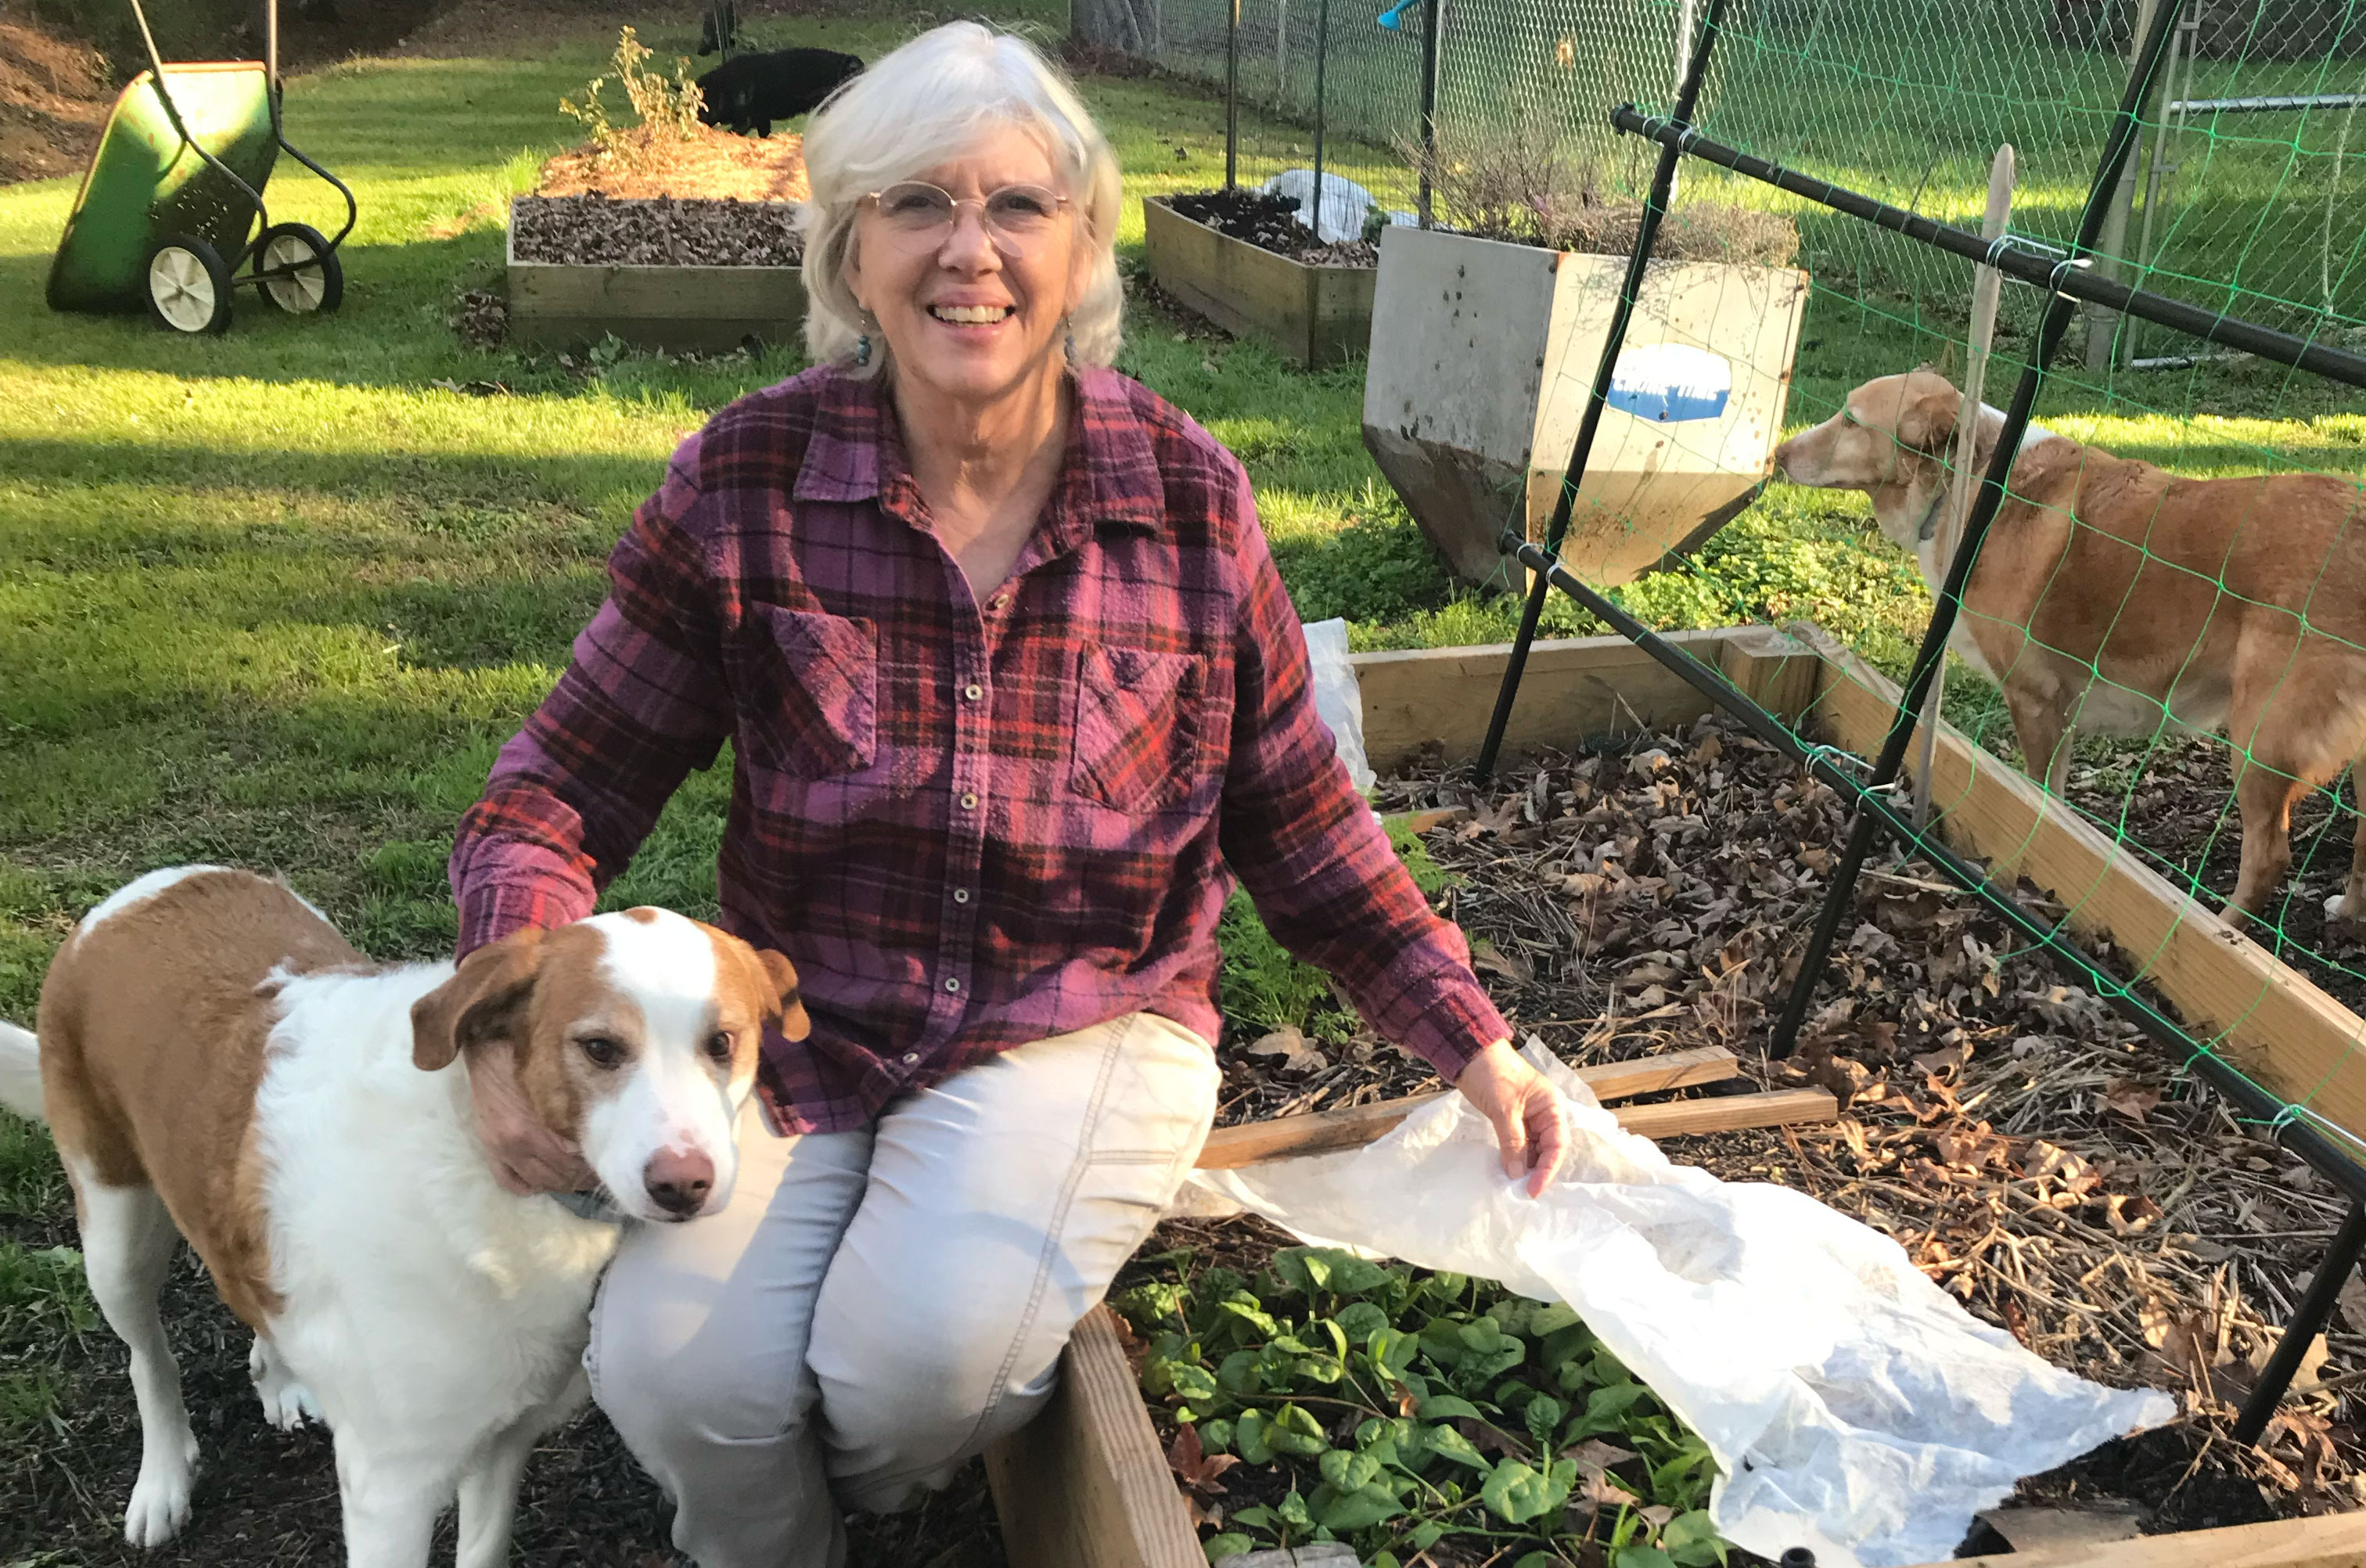 Karen Creel with cute dog in the garden